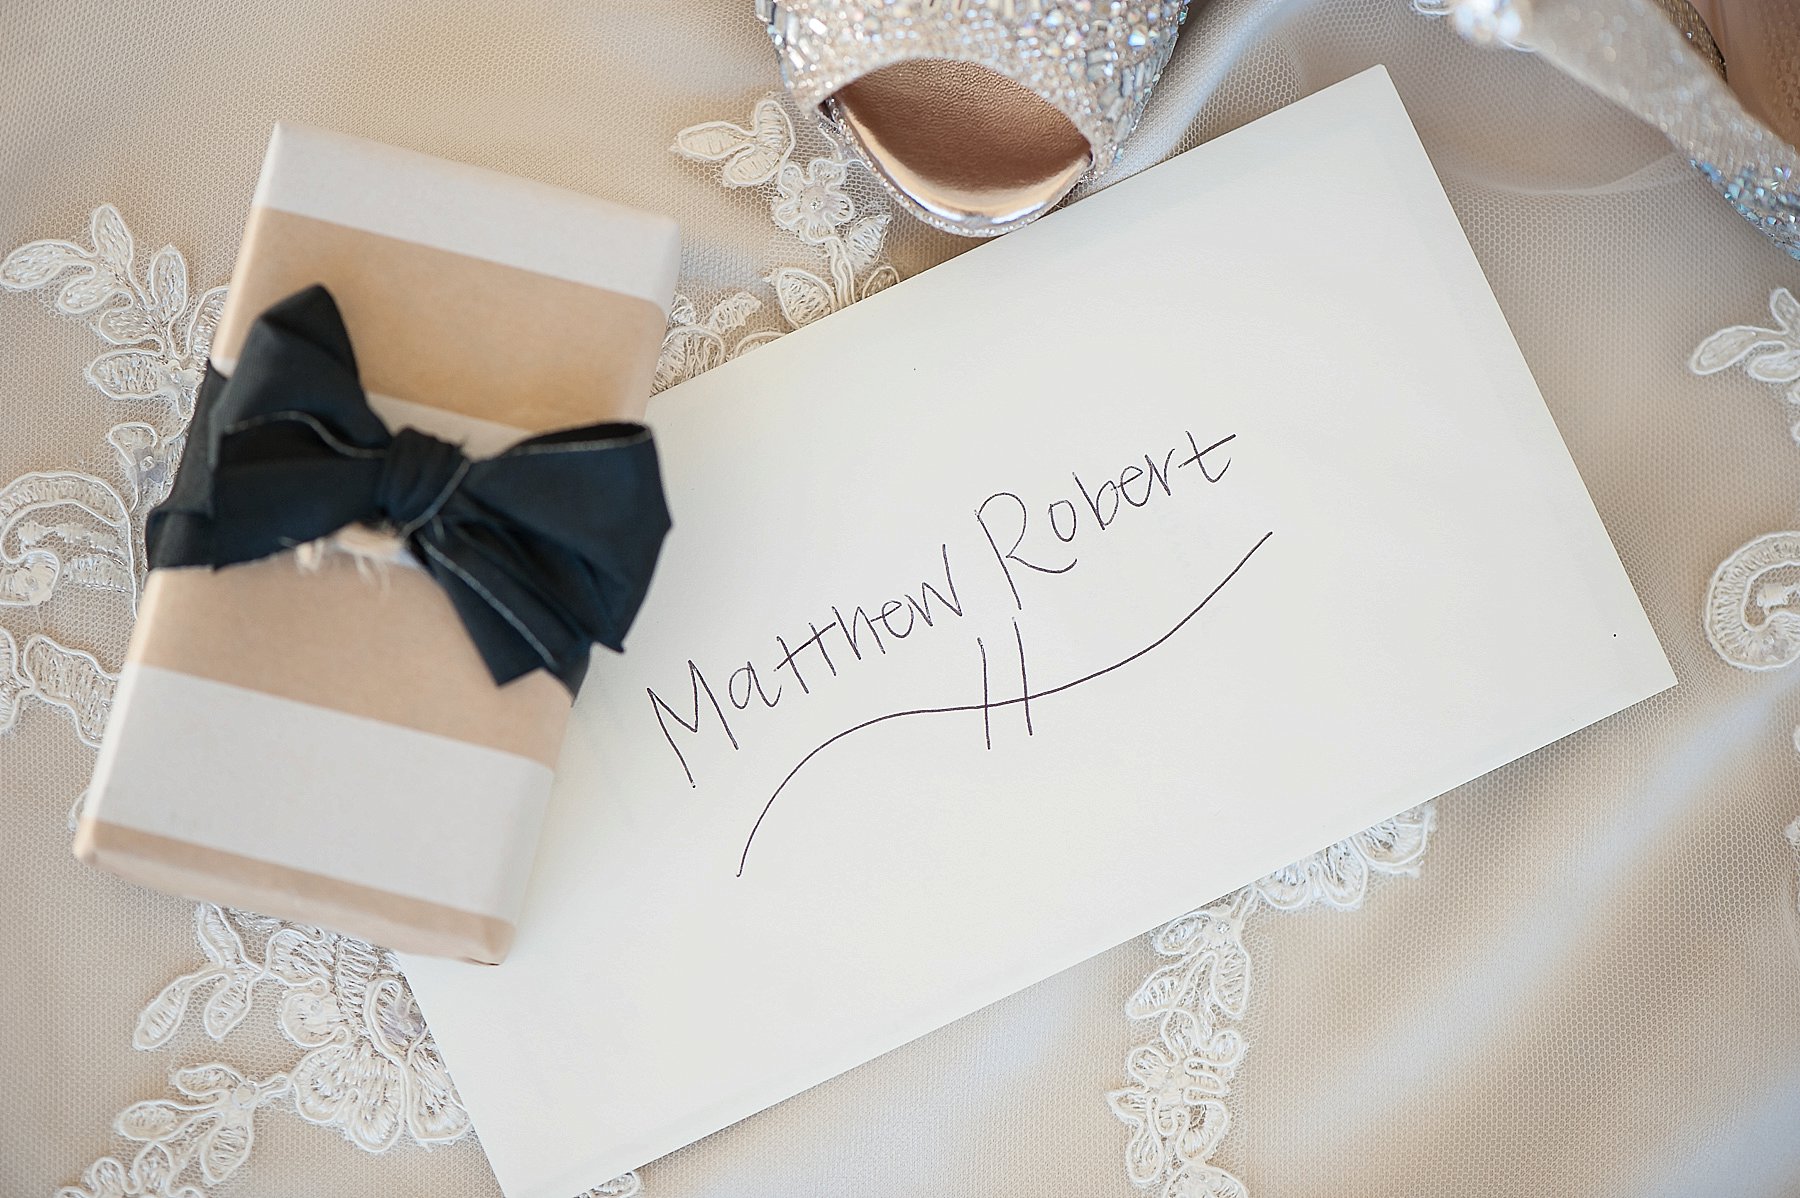 Montelucia Wedding Gift Card Scottsdale Arizona Photo